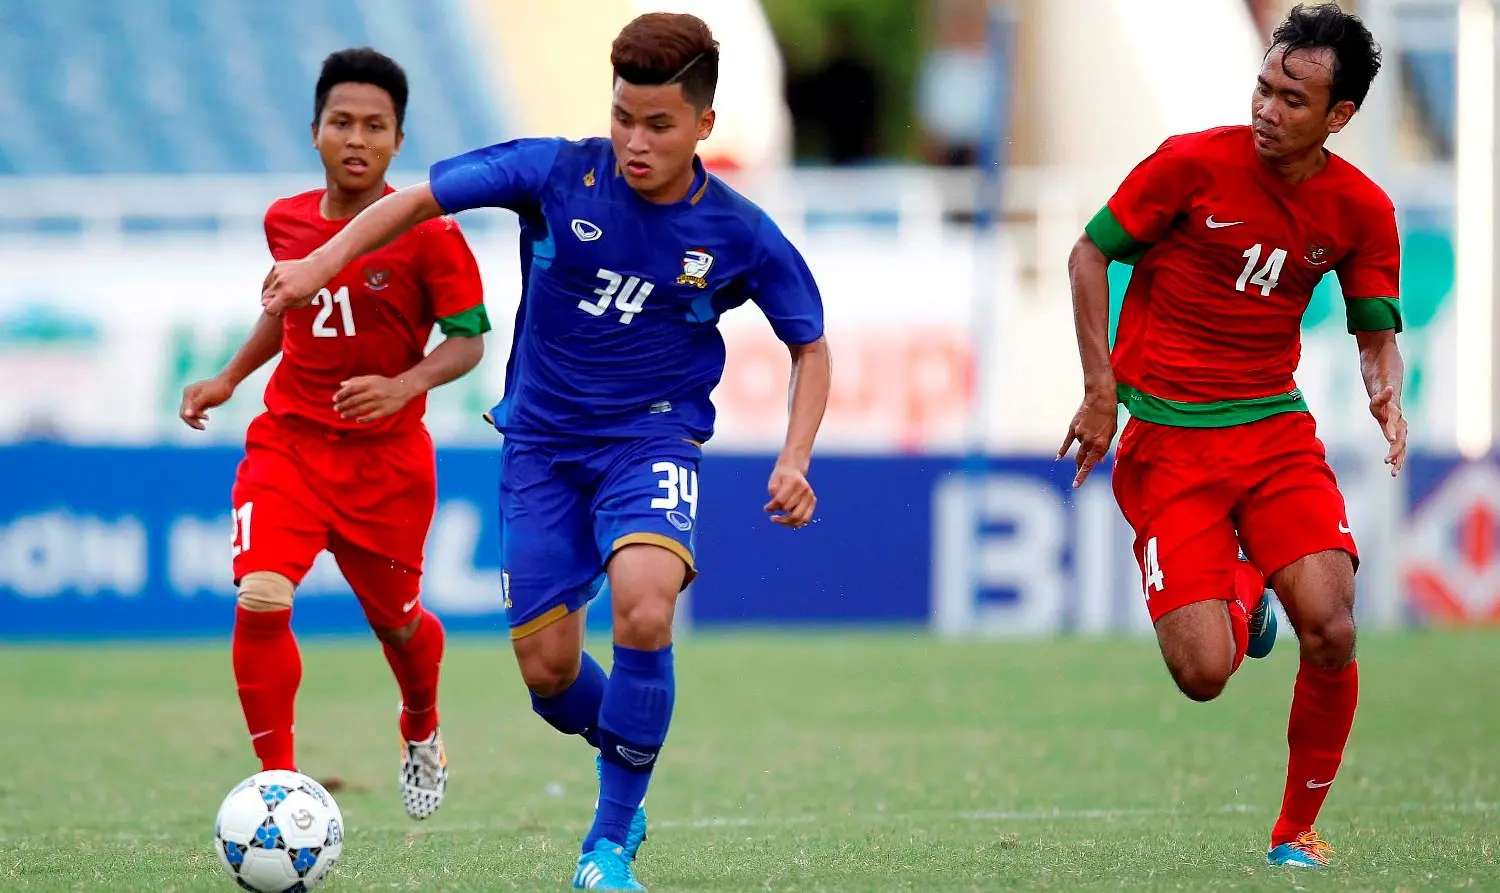 Momen Timnas Indonesia U-19 menghadapi Thailand dalam Piala AFF U-19 2014. Thailand menang telak 6-2 atas Timnas Indonesia U-19 saat itu. (Aseanfootball.org)